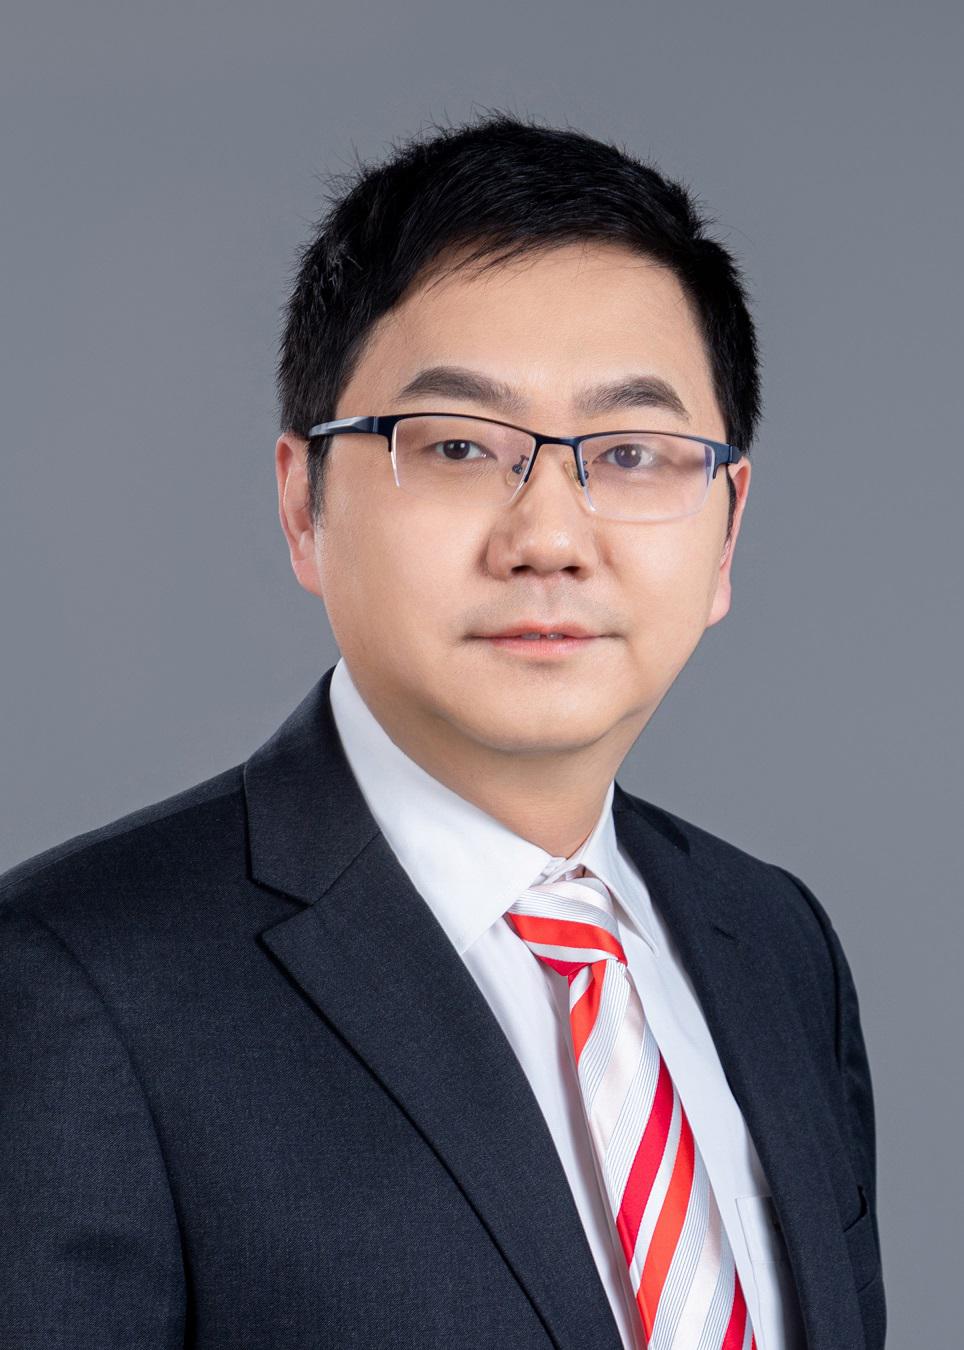 Dr. Zheng Hui